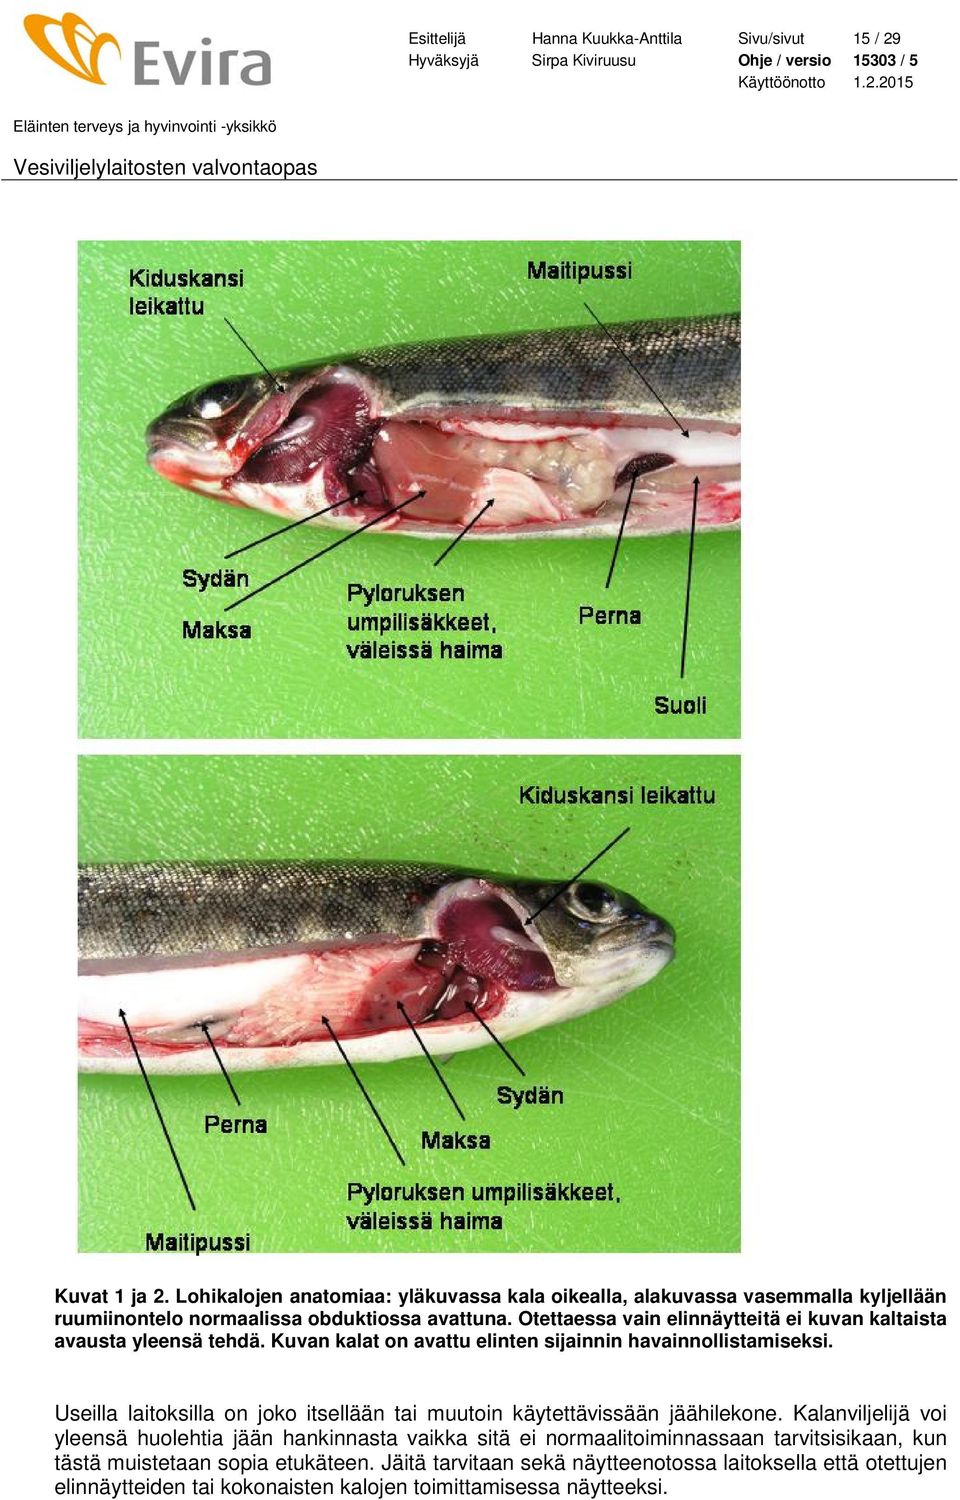 Otettaessa vain elinnäytteitä ei kuvan kaltaista avausta yleensä tehdä. Kuvan kalat on avattu elinten sijainnin havainnollistamiseksi.